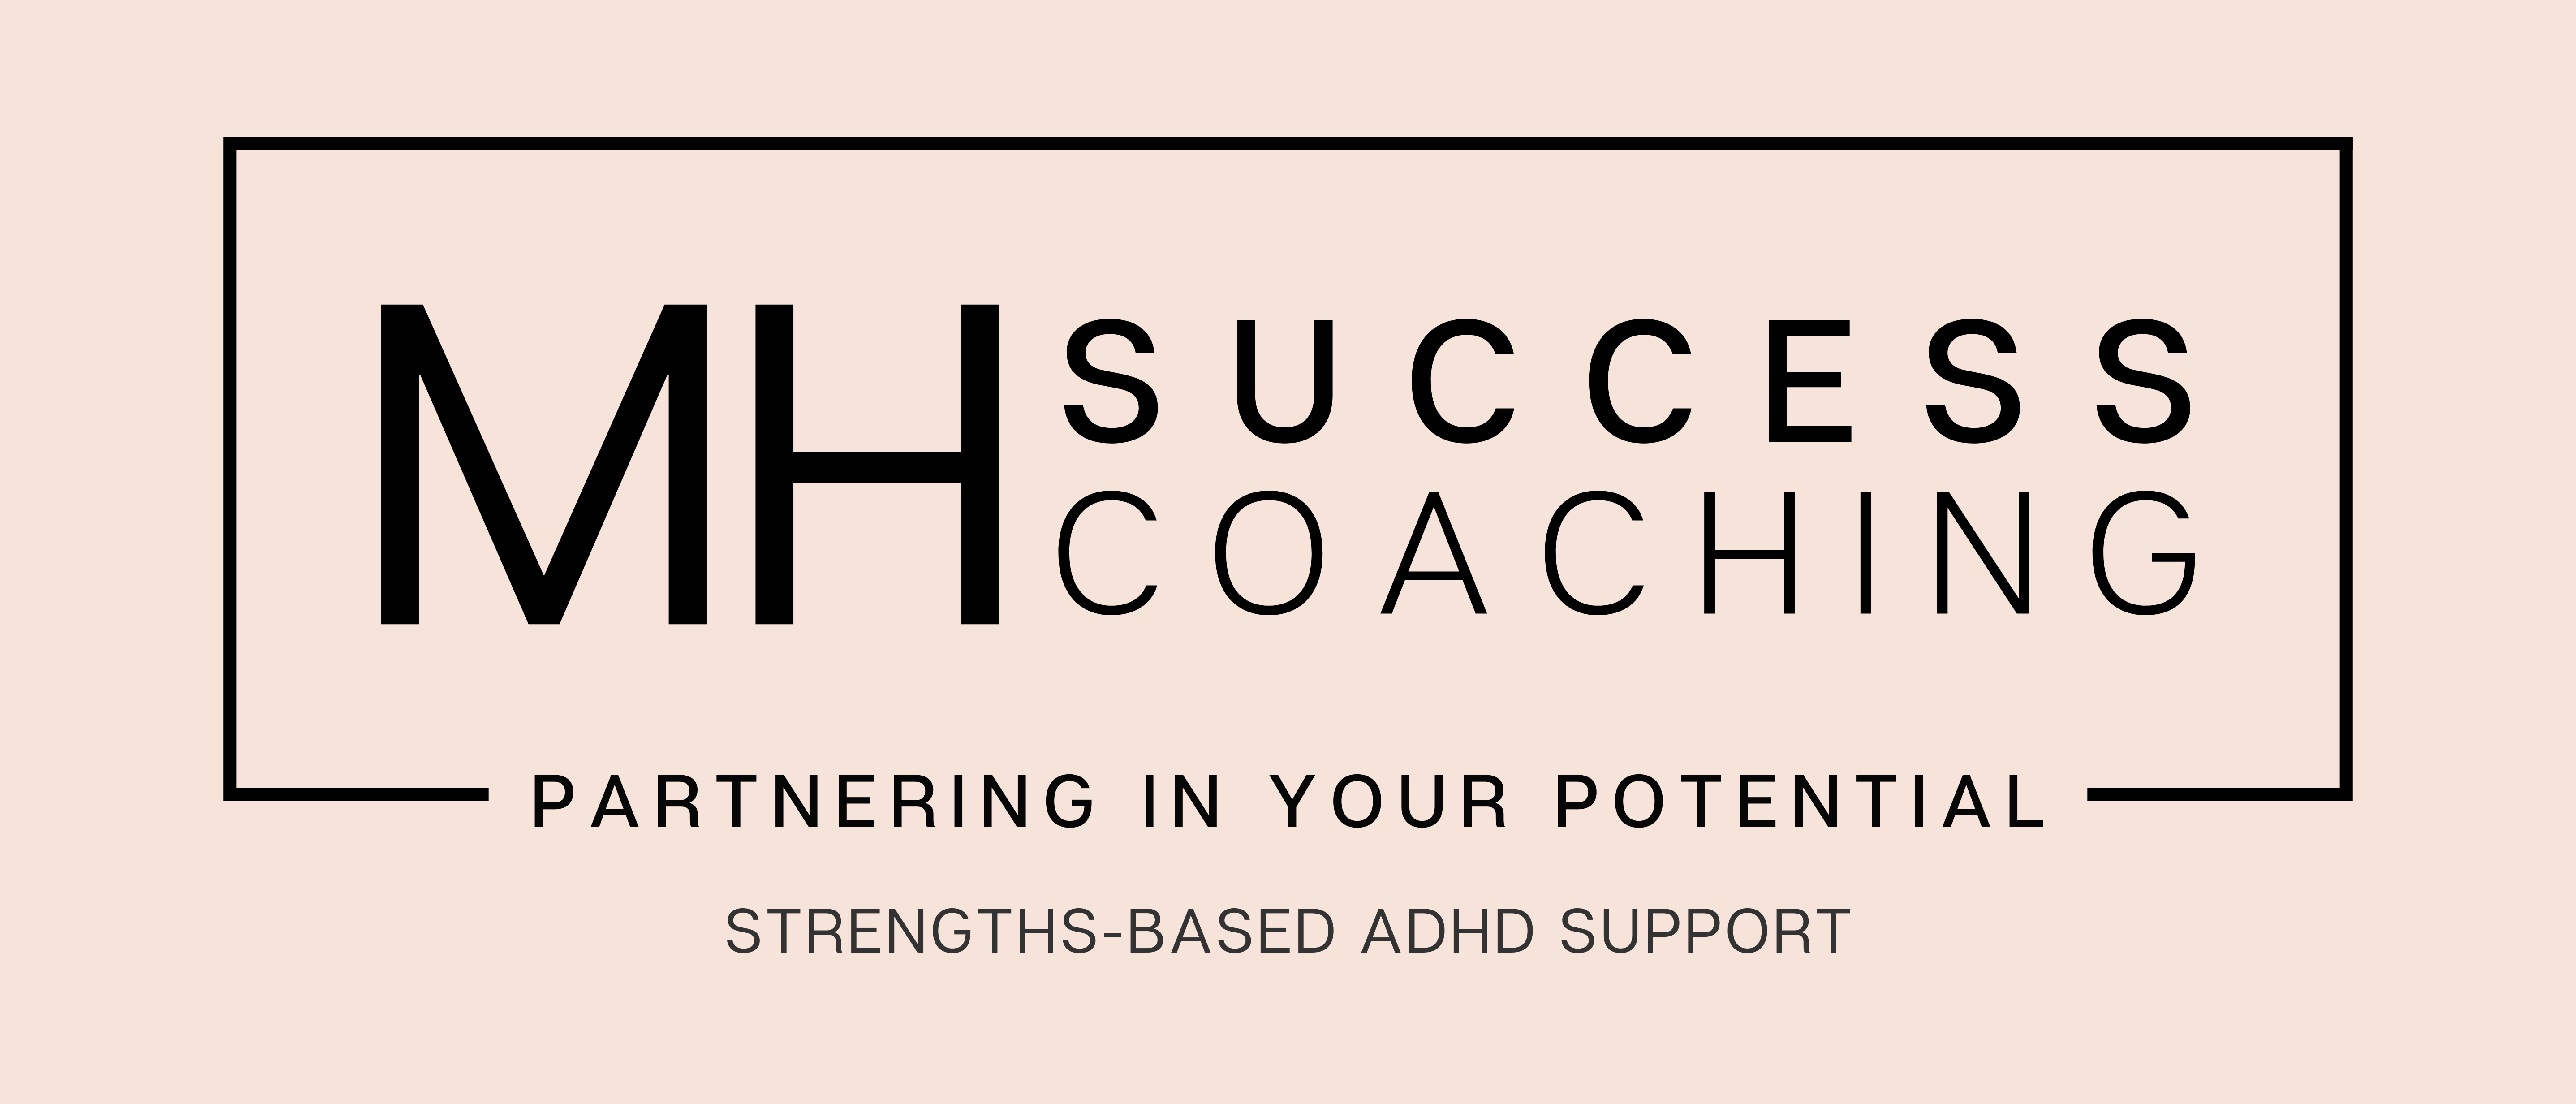 MH Success Coaching